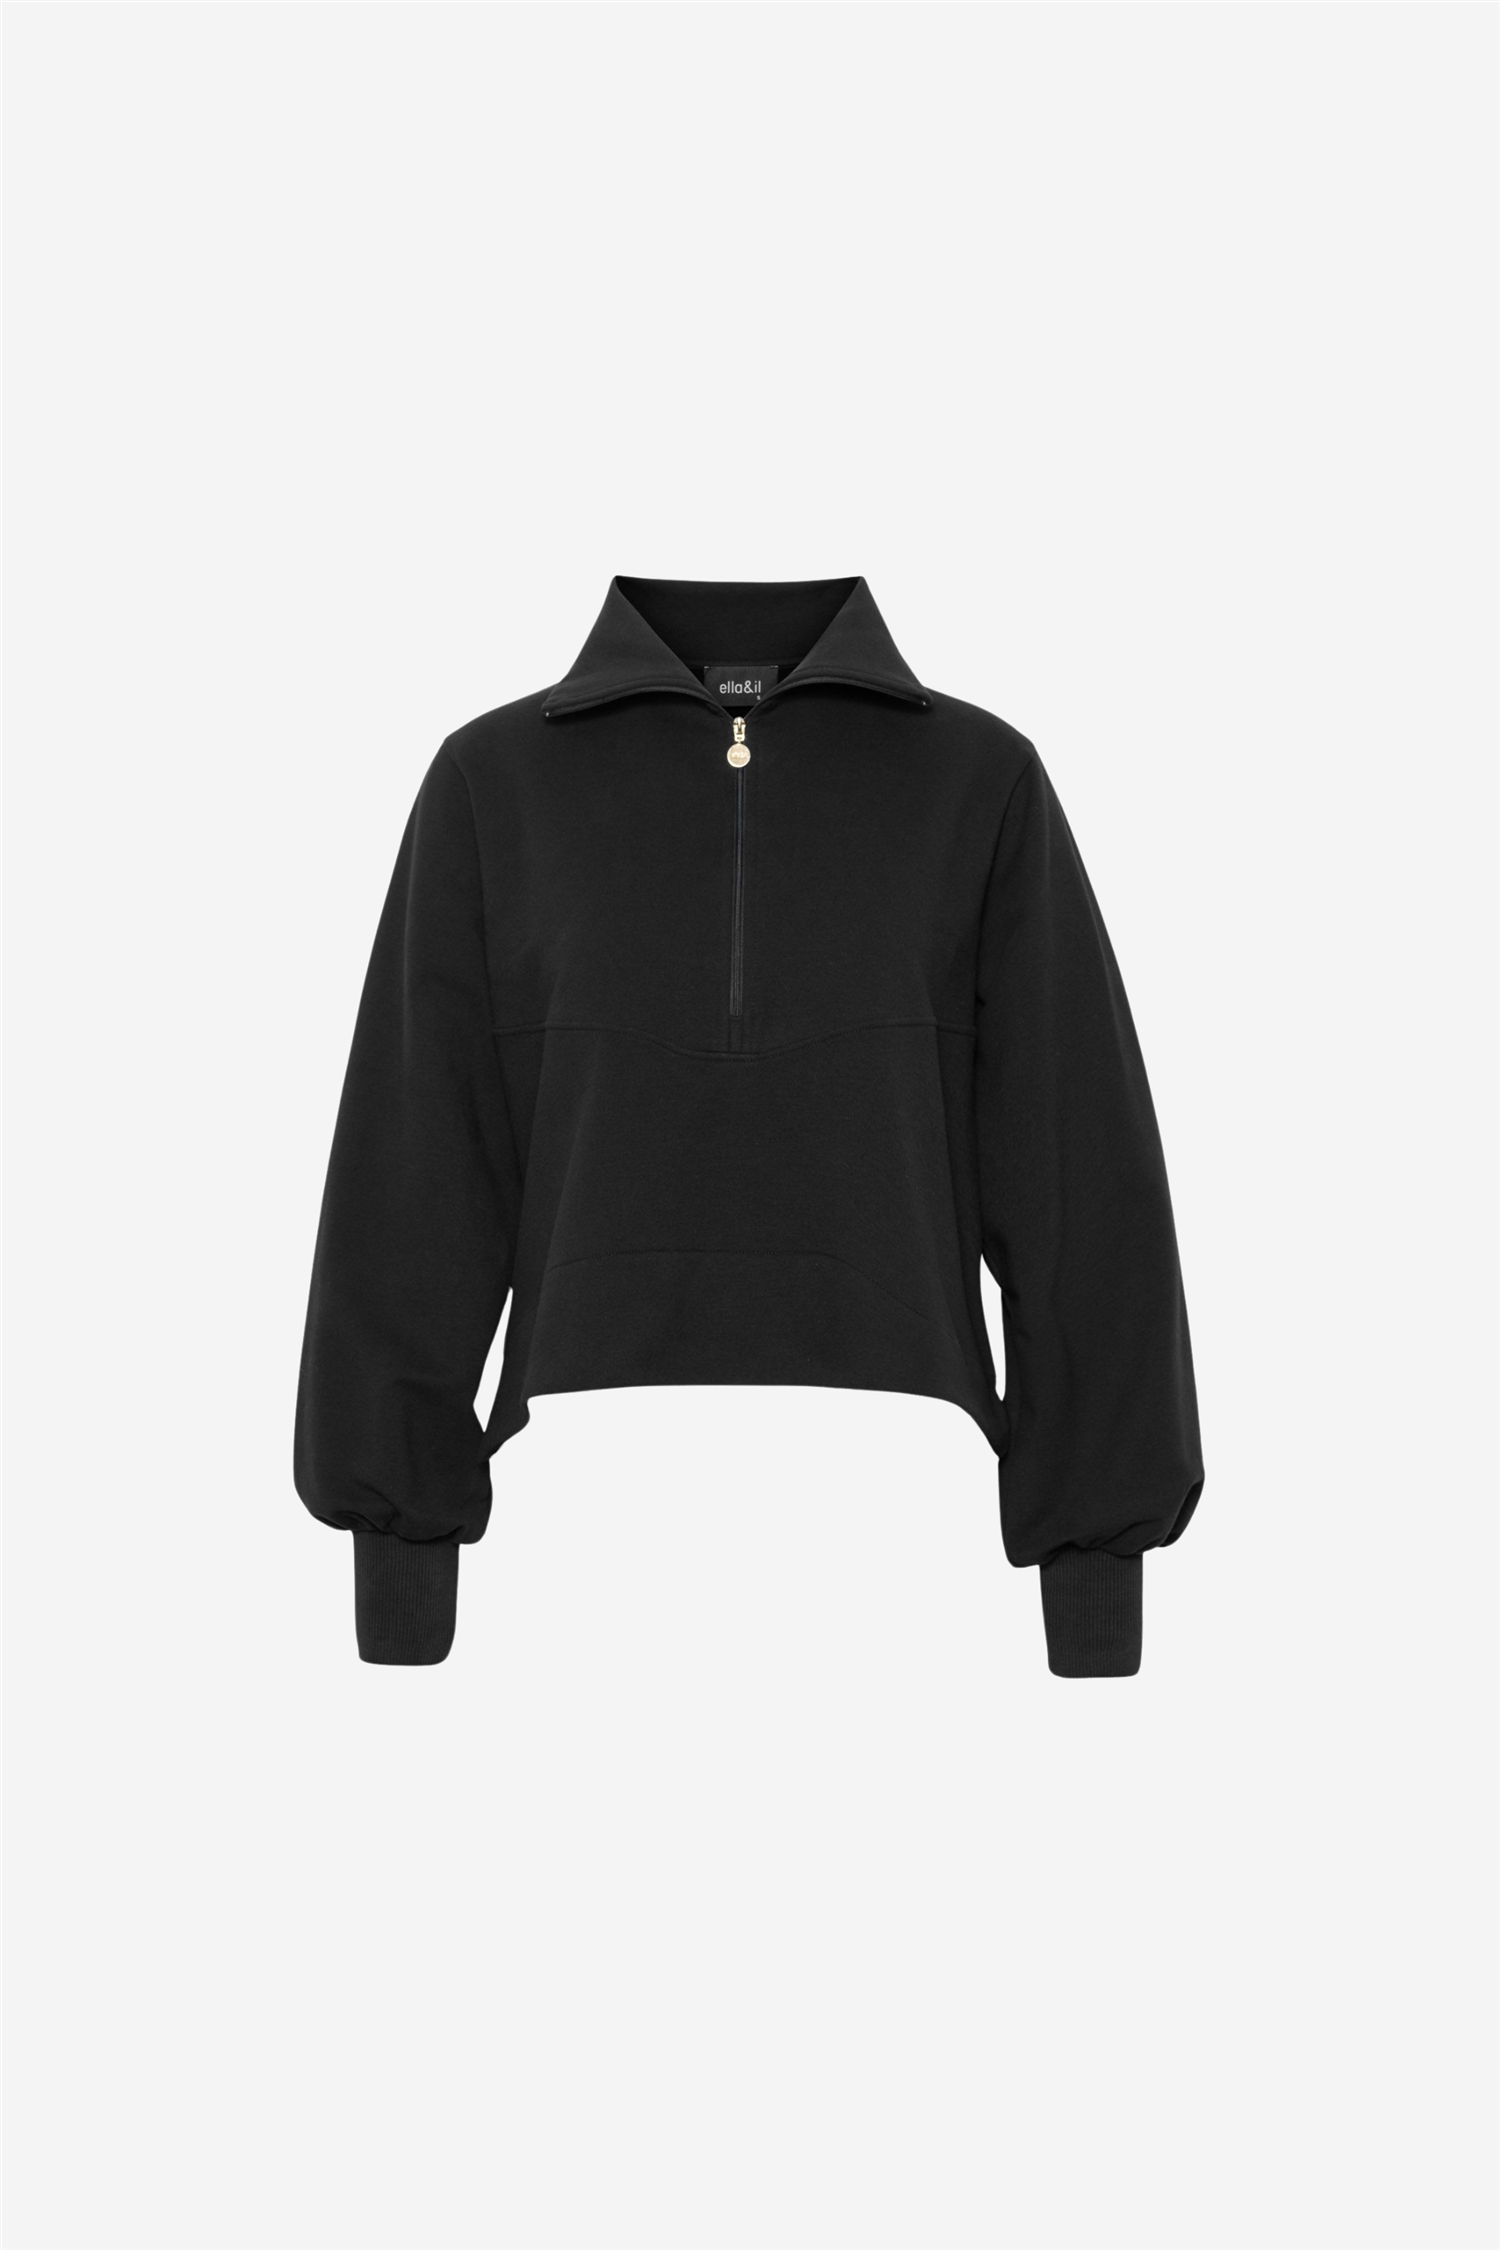 ELLJA - BLACK, Sweaters & Hoodies